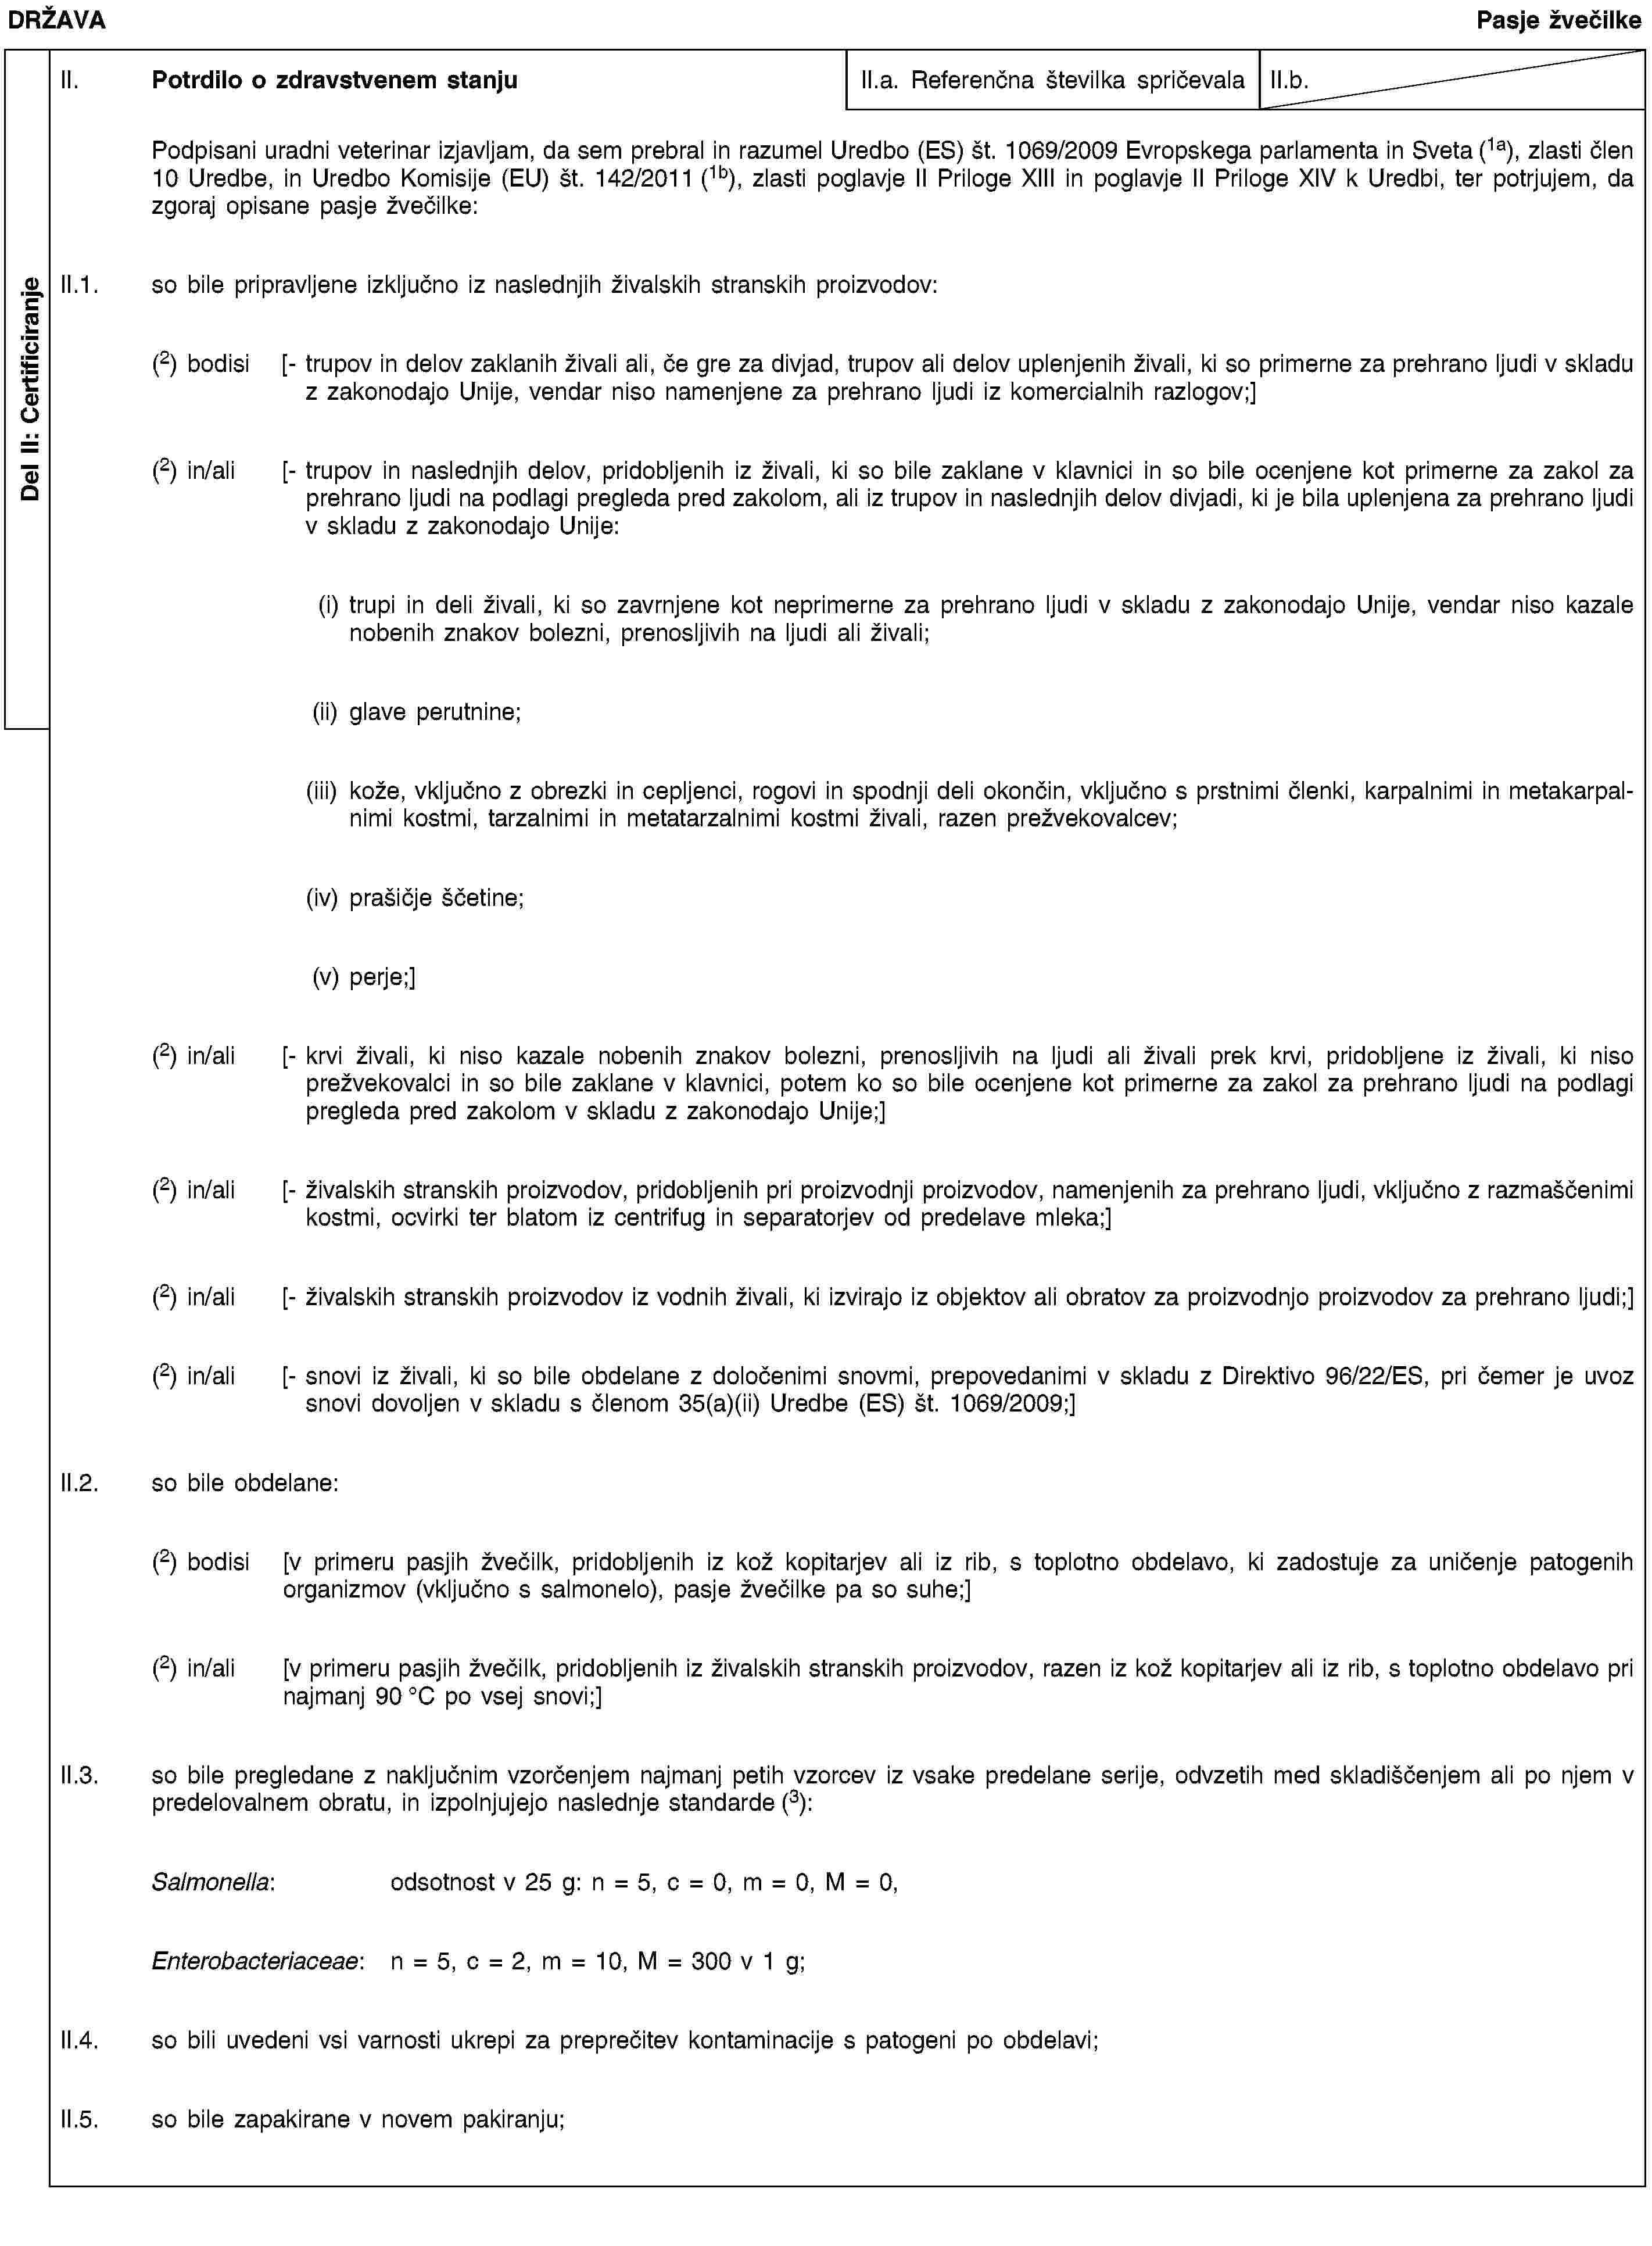 Del II: CertificiranjeDRŽAVAPasje žvečilkeII. Potrdilo o zdravstvenem stanjuII.a. Referenčna številka spričevalaII.b.Podpisani uradni veterinar izjavljam, da sem prebral in razumel Uredbo (ES) št. 1069/2009 Evropskega parlamenta in Sveta (1a), zlasti člen 10 Uredbe, in Uredbo Komisije (EU) št. 142/2011 (1b), zlasti poglavje II Priloge XIII in poglavje II Priloge XIV k Uredbi, ter potrjujem, da zgoraj opisane pasje žvečilke:II.1. so bile pripravljene izključno iz naslednjih živalskih stranskih proizvodov:(2) bodisi [- trupov in delov zaklanih živali ali, če gre za divjad, trupov ali delov uplenjenih živali, ki so primerne za prehrano ljudi v skladu z zakonodajo Unije, vendar niso namenjene za prehrano ljudi iz komercialnih razlogov;](2) in/ali [- trupov in naslednjih delov, pridobljenih iz živali, ki so bile zaklane v klavnici in so bile ocenjene kot primerne za zakol za prehrano ljudi na podlagi pregleda pred zakolom, ali iz trupov in naslednjih delov divjadi, ki je bila uplenjena za prehrano ljudi v skladu z zakonodajo Unije:(i) trupi in deli živali, ki so zavrnjene kot neprimerne za prehrano ljudi v skladu z zakonodajo Unije, vendar niso kazale nobenih znakov bolezni, prenosljivih na ljudi ali živali;(ii) glave perutnine;(iii) kože, vključno z obrezki in cepljenci, rogovi in spodnji deli okončin, vključno s prstnimi členki, karpalnimi in metakarpalnimi kostmi, tarzalnimi in metatarzalnimi kostmi živali, razen prežvekovalcev;(iv) prašičje ščetine;(v) perje;](2) in/ali [- krvi živali, ki niso kazale nobenih znakov bolezni, prenosljivih na ljudi ali živali prek krvi, pridobljene iz živali, ki niso prežvekovalci in so bile zaklane v klavnici, potem ko so bile ocenjene kot primerne za zakol za prehrano ljudi na podlagi pregleda pred zakolom v skladu z zakonodajo Unije;](2) in/ali [- živalskih stranskih proizvodov, pridobljenih pri proizvodnji proizvodov, namenjenih za prehrano ljudi, vključno z razmaščenimi kostmi, ocvirki ter blatom iz centrifug in separatorjev od predelave mleka;](2) in/ali [- živalskih stranskih proizvodov iz vodnih živali, ki izvirajo iz objektov ali obratov za proizvodnjo proizvodov za prehrano ljudi;](2) in/ali [- snovi iz živali, ki so bile obdelane z določenimi snovmi, prepovedanimi v skladu z Direktivo 96/22/ES, pri čemer je uvoz snovi dovoljen v skladu s členom 35(a)(ii) Uredbe (ES) št. 1069/2009;]II.2. so bile obdelane:(2) bodisi [v primeru pasjih žvečilk, pridobljenih iz kož kopitarjev ali iz rib, s toplotno obdelavo, ki zadostuje za uničenje patogenih organizmov (vključno s salmonelo), pasje žvečilke pa so suhe;](2) in/ali [v primeru pasjih žvečilk, pridobljenih iz živalskih stranskih proizvodov, razen iz kož kopitarjev ali iz rib, s toplotno obdelavo pri najmanj 90 °C po vsej snovi;]II.3. so bile pregledane z naključnim vzorčenjem najmanj petih vzorcev iz vsake predelane serije, odvzetih med skladiščenjem ali po njem v predelovalnem obratu, in izpolnjujejo naslednje standarde (3):Salmonella: odsotnost v 25 g: n = 5, c = 0, m = 0, M = 0,Enterobacteriaceae: n = 5, c = 2, m = 10, M = 300 v 1 g;II.4. so bili uvedeni vsi varnosti ukrepi za preprečitev kontaminacije s patogeni po obdelavi;II.5. so bile zapakirane v novem pakiranju;